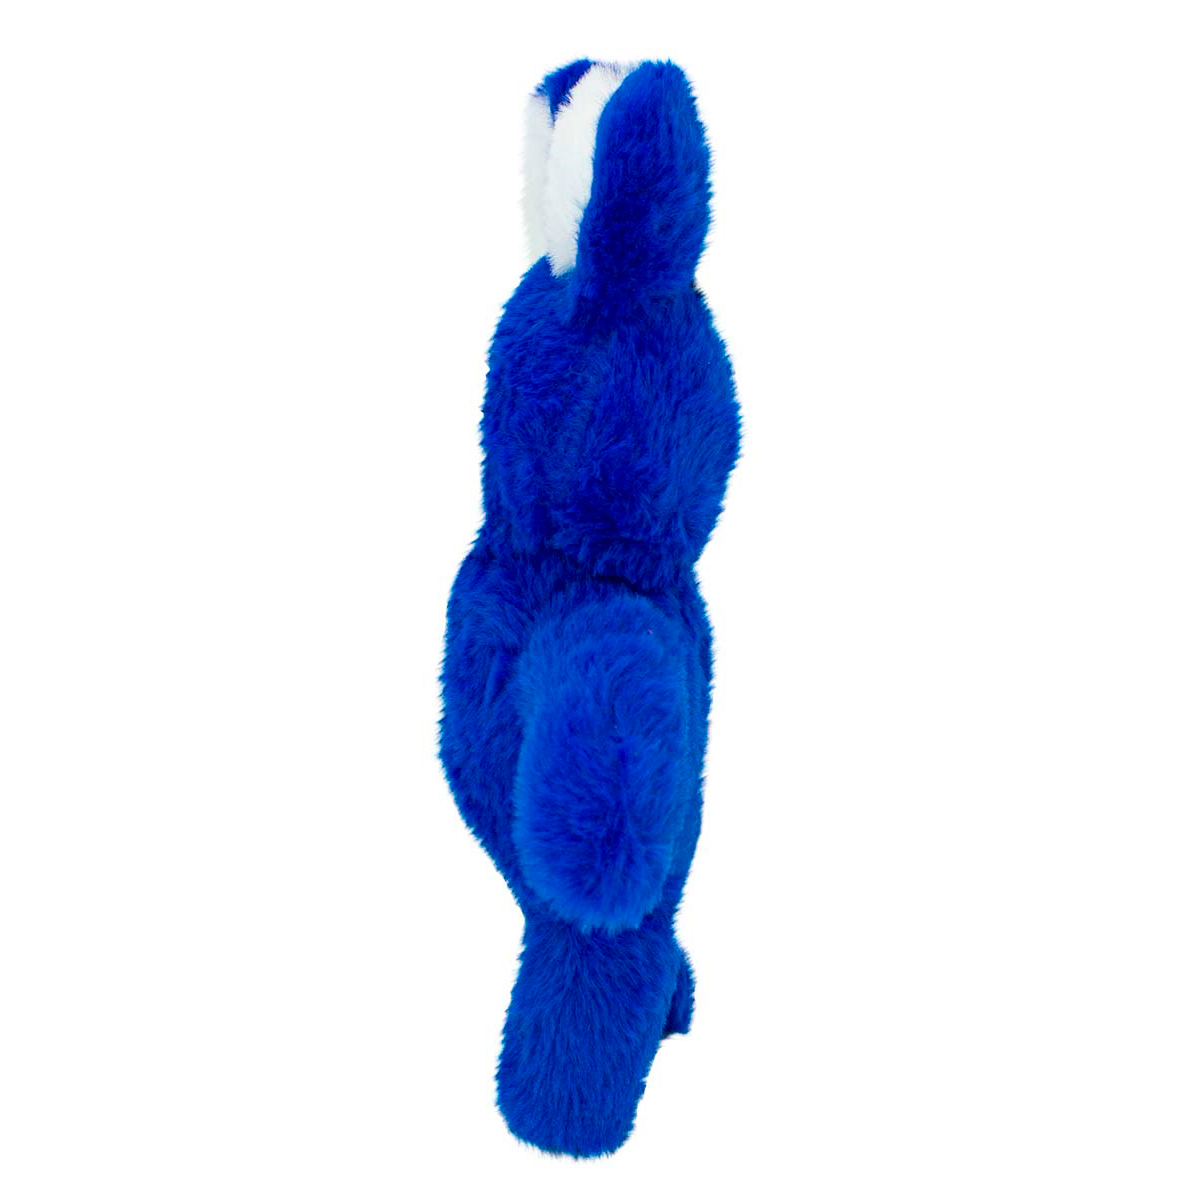 Мягкая игрушка Михи-Михи huggy Wuggy Мистер Хоппс синяя 30см - фото 3